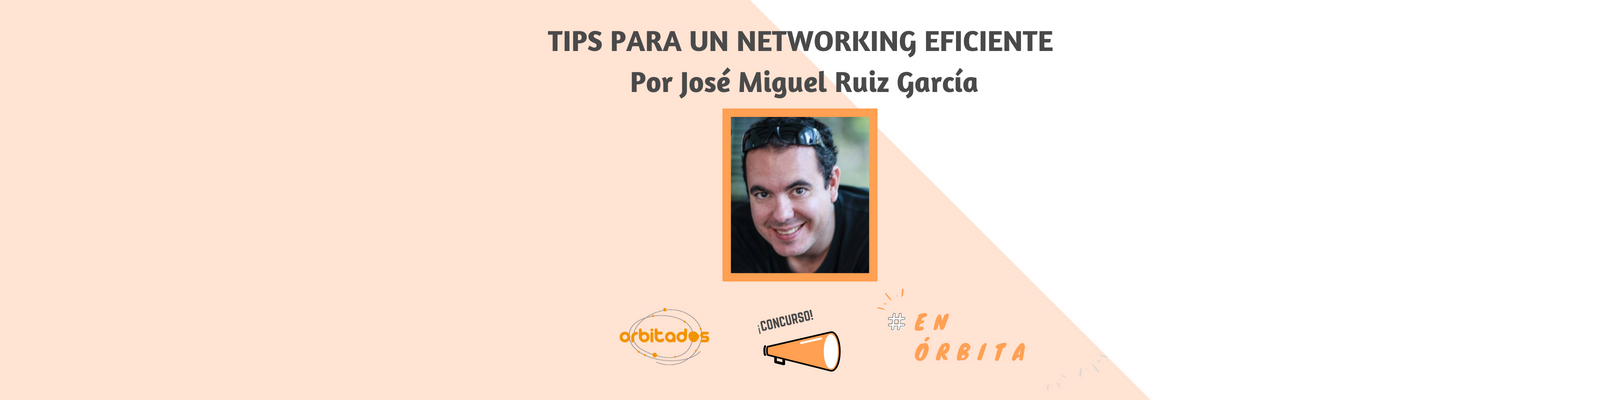 Tips para un networking eficiente. Por José Miguel Ruiz García